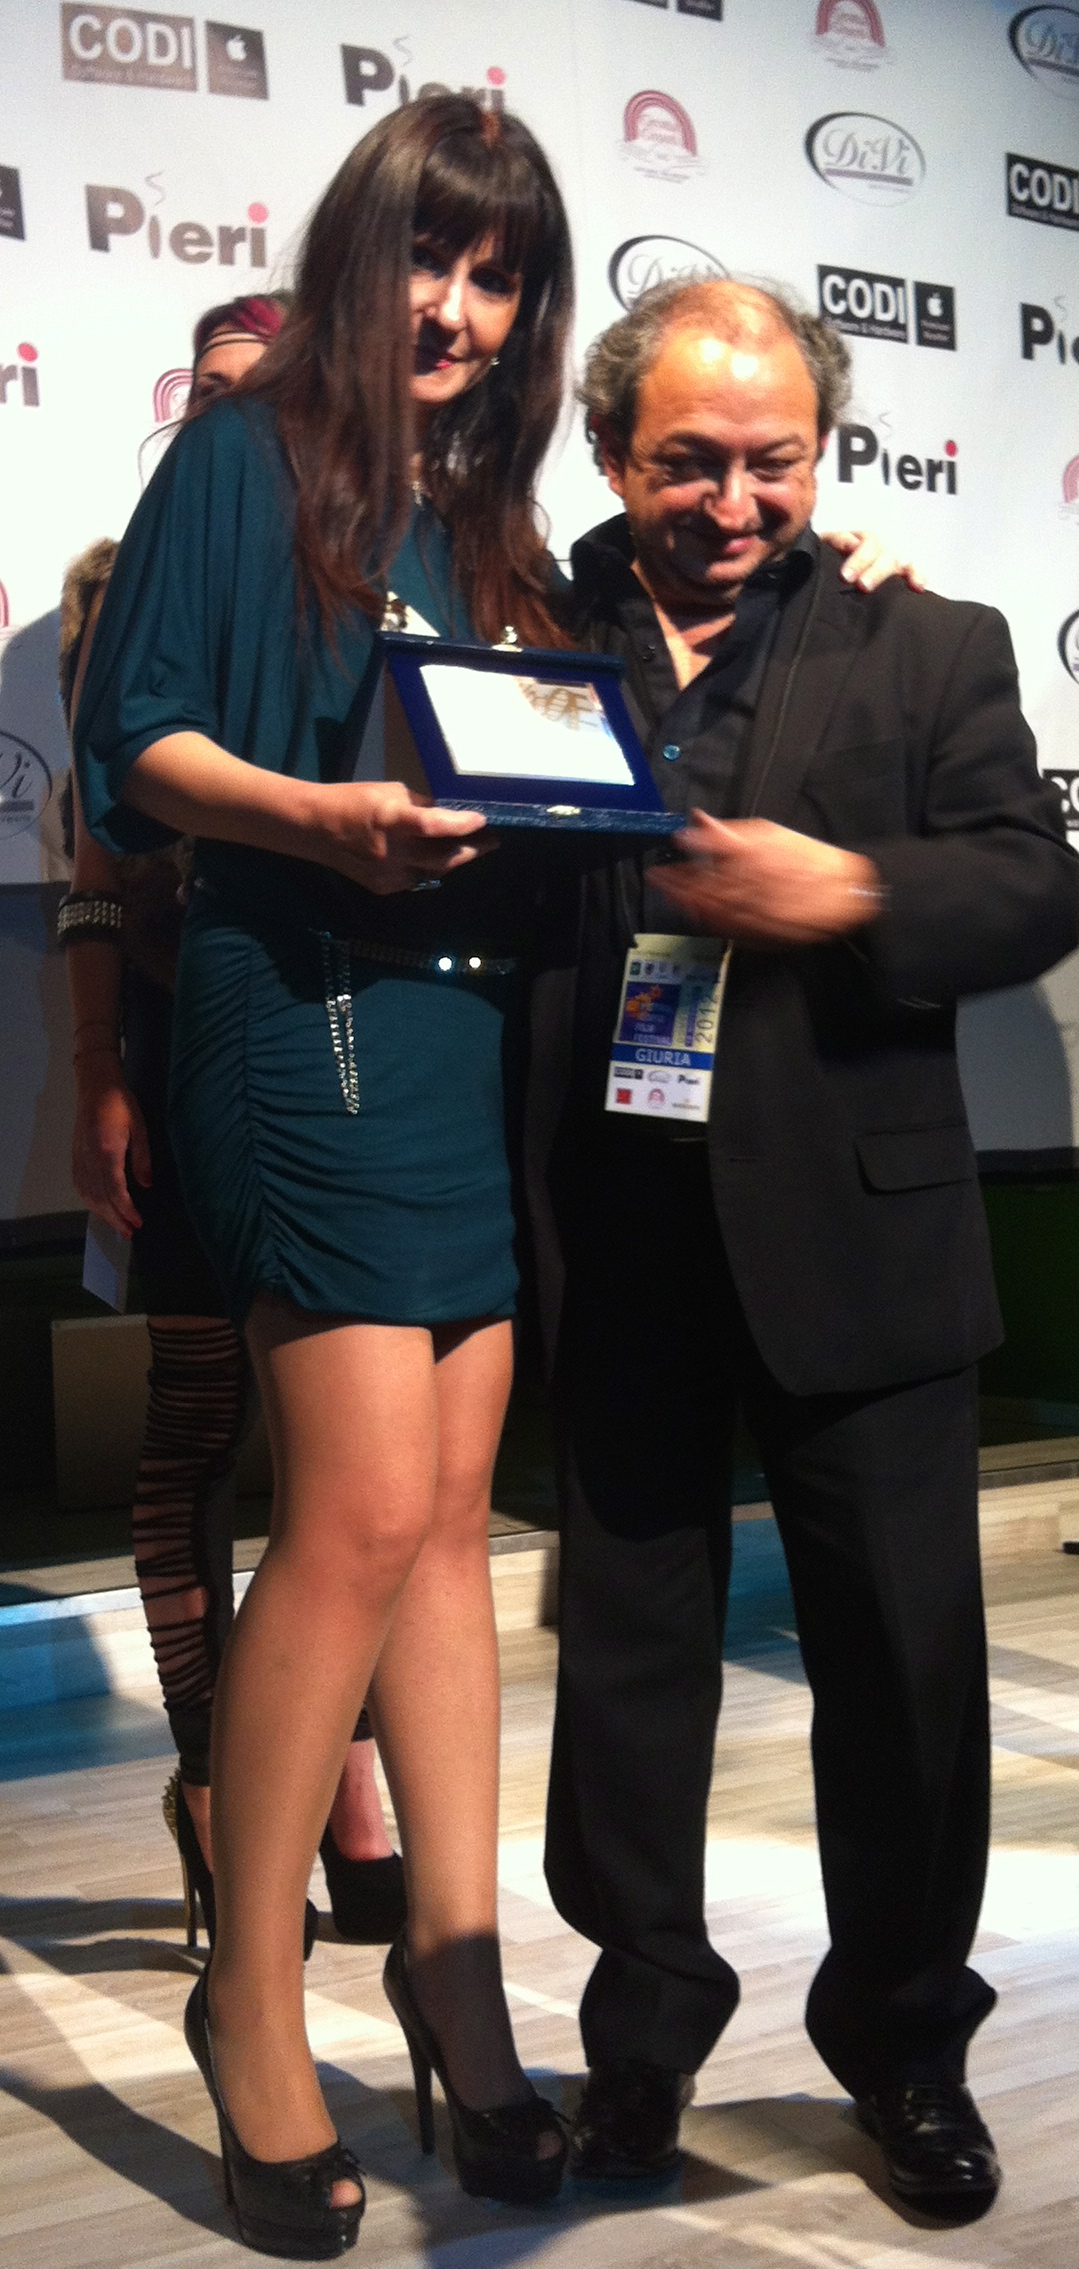 Barbara Boldri, e Orfeo Orlando, regista, Premiati al Pistoia Corto Film Festival 2012.